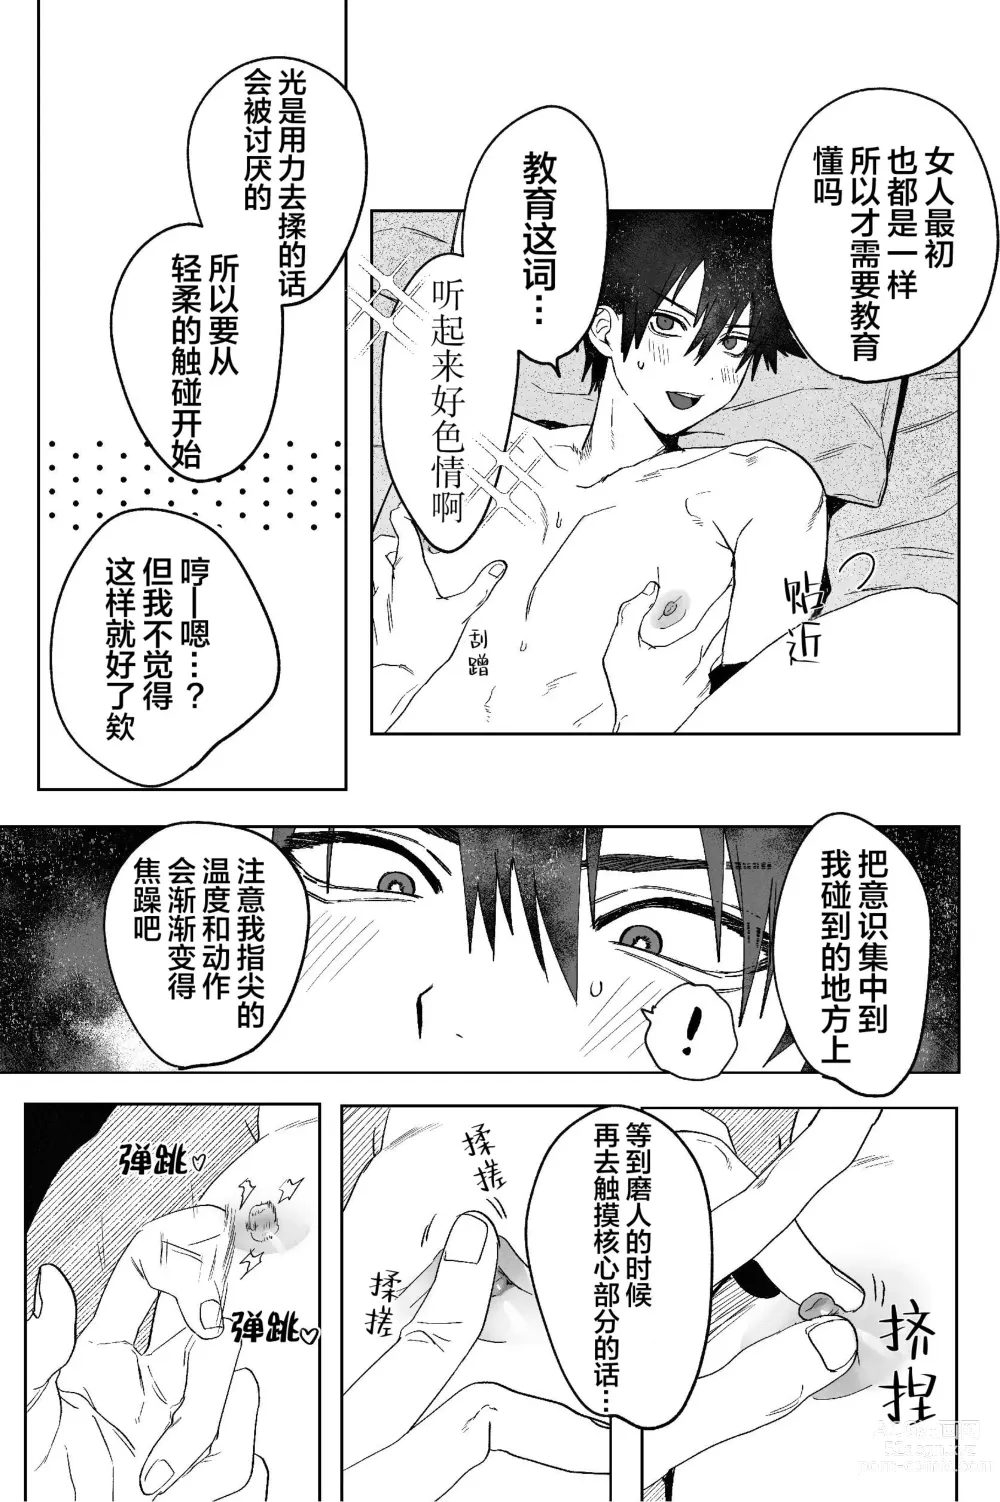 Page 6 of doujinshi Fujun Osu Ana Kouyuu